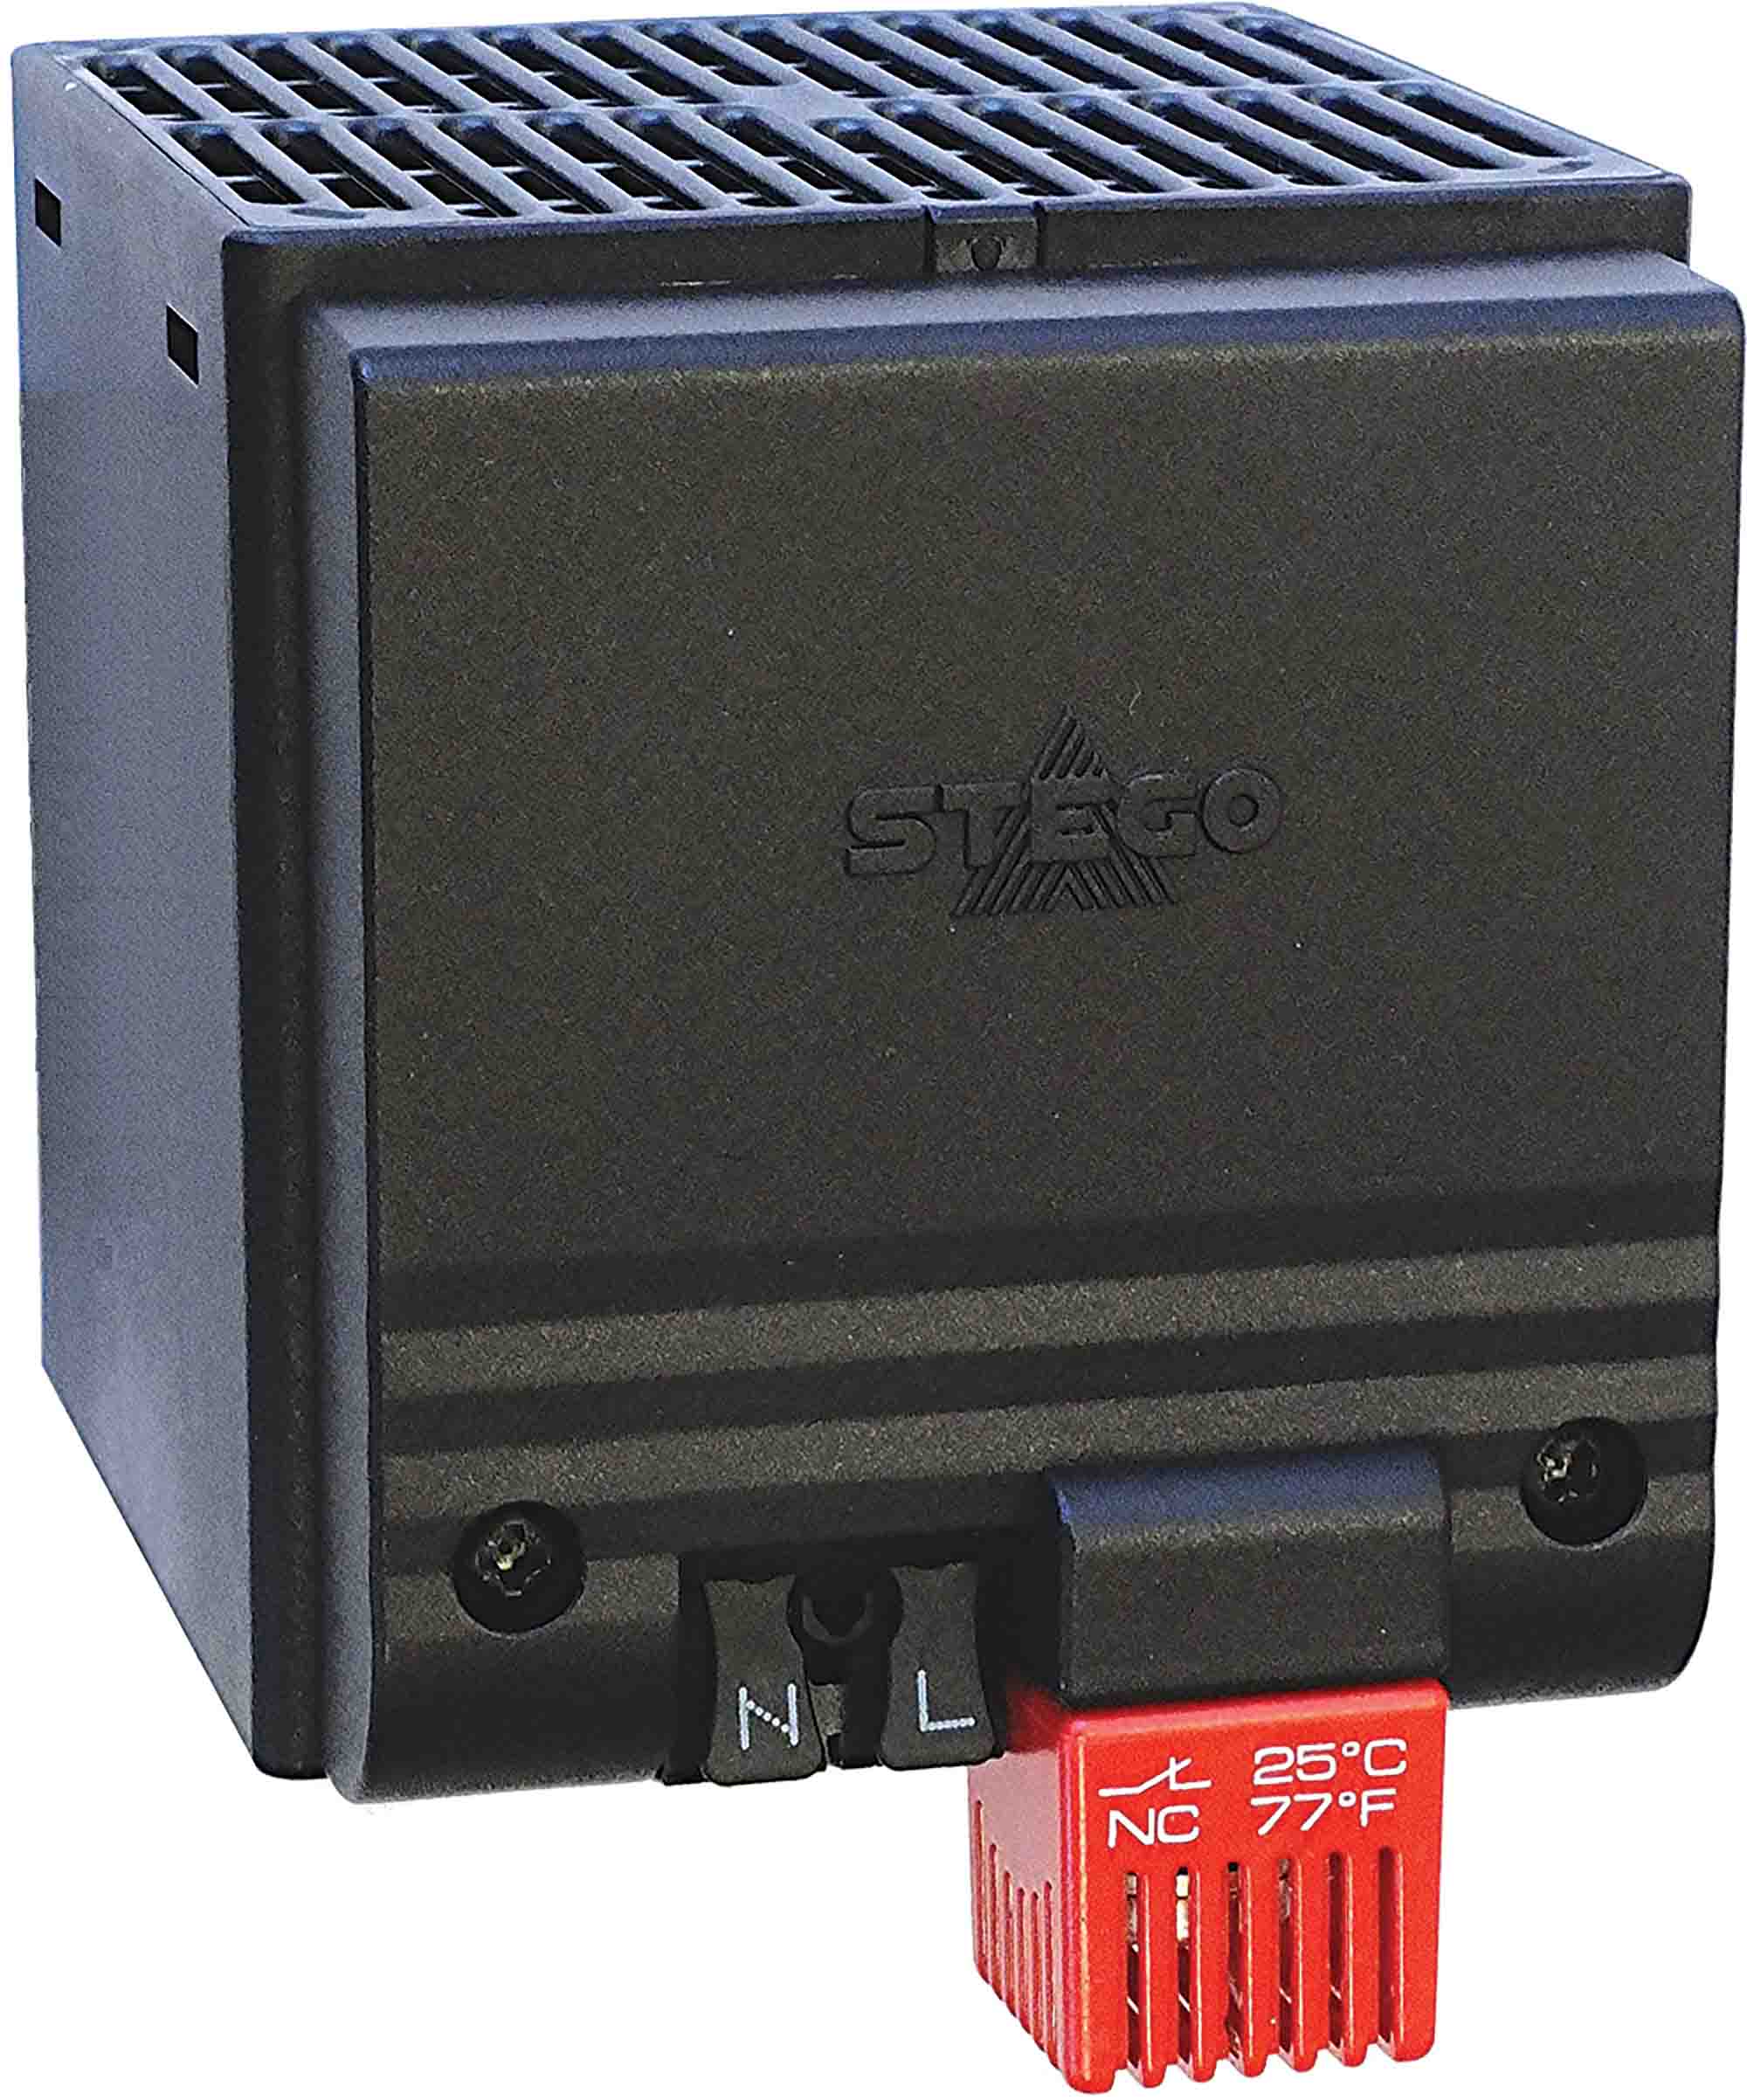 STEGO Enclosure Heater, 230V ac, 400W Output, 65°C, 105mm x 85mm x 118mm